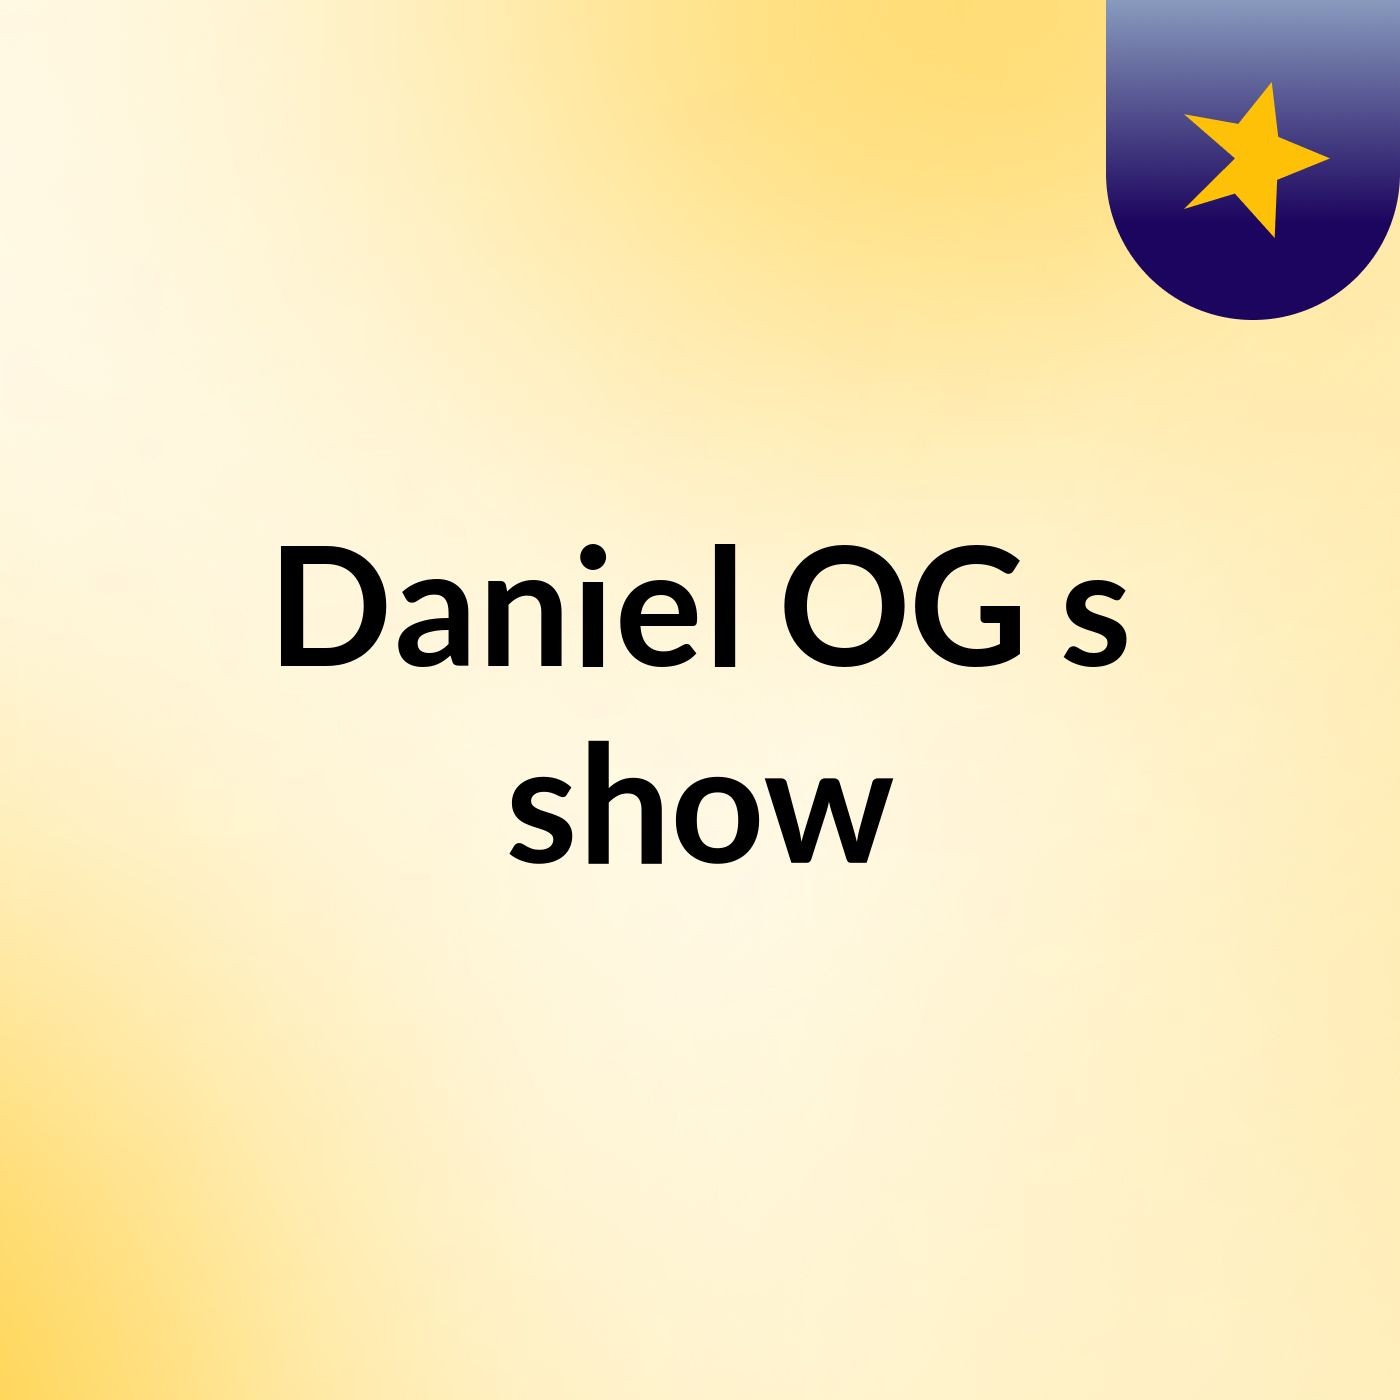 Daniel OG's show